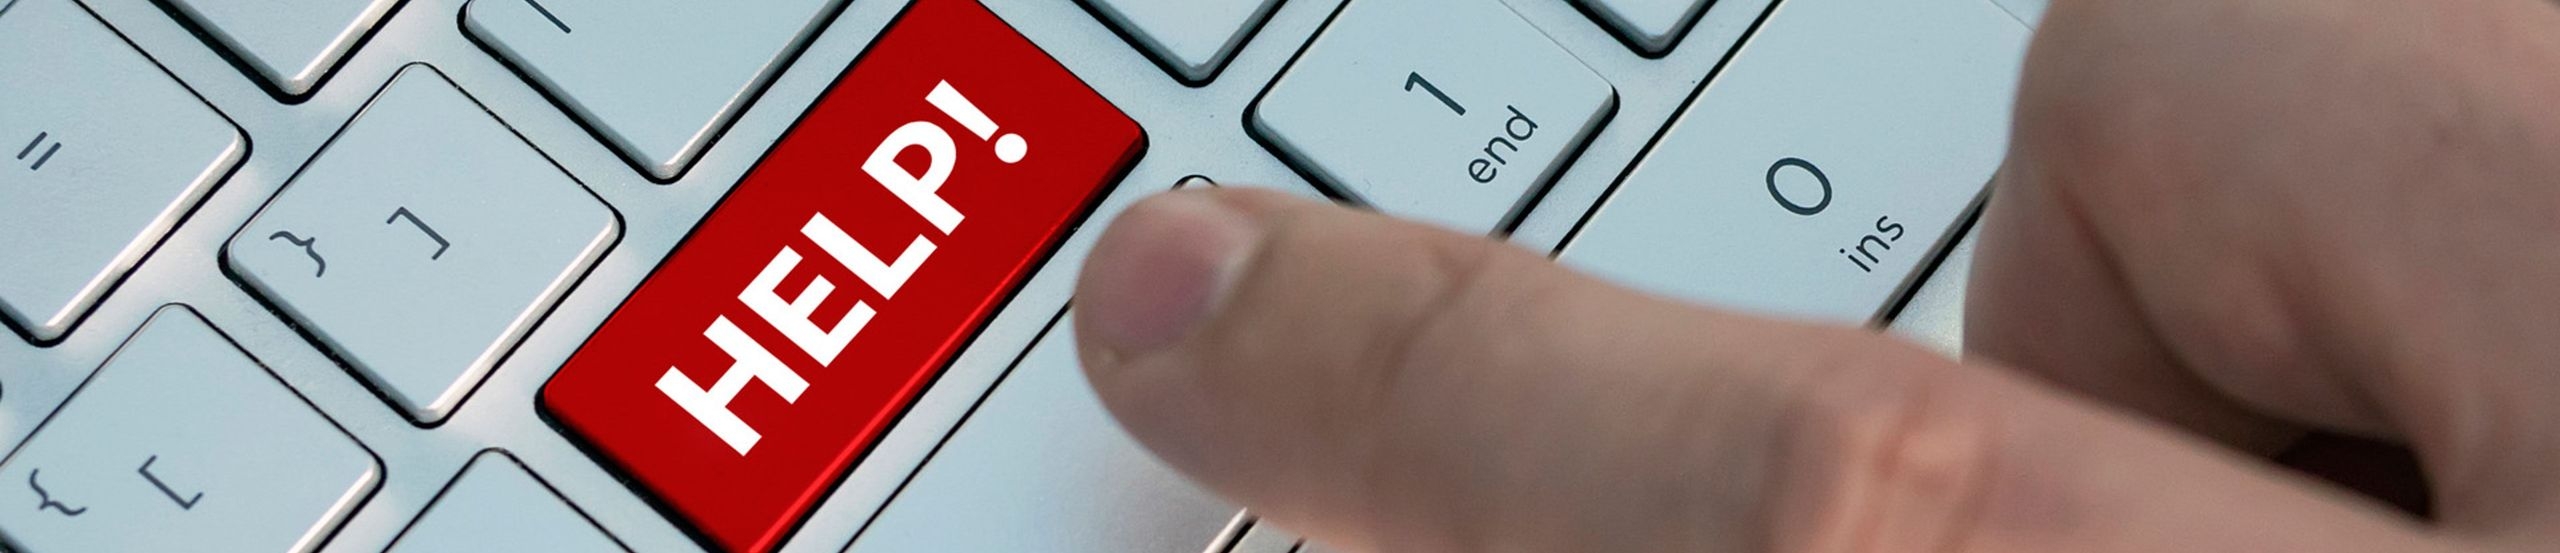 Eine Person drückt einen mit Help beschrifteten Knopf auf einer Tastatur